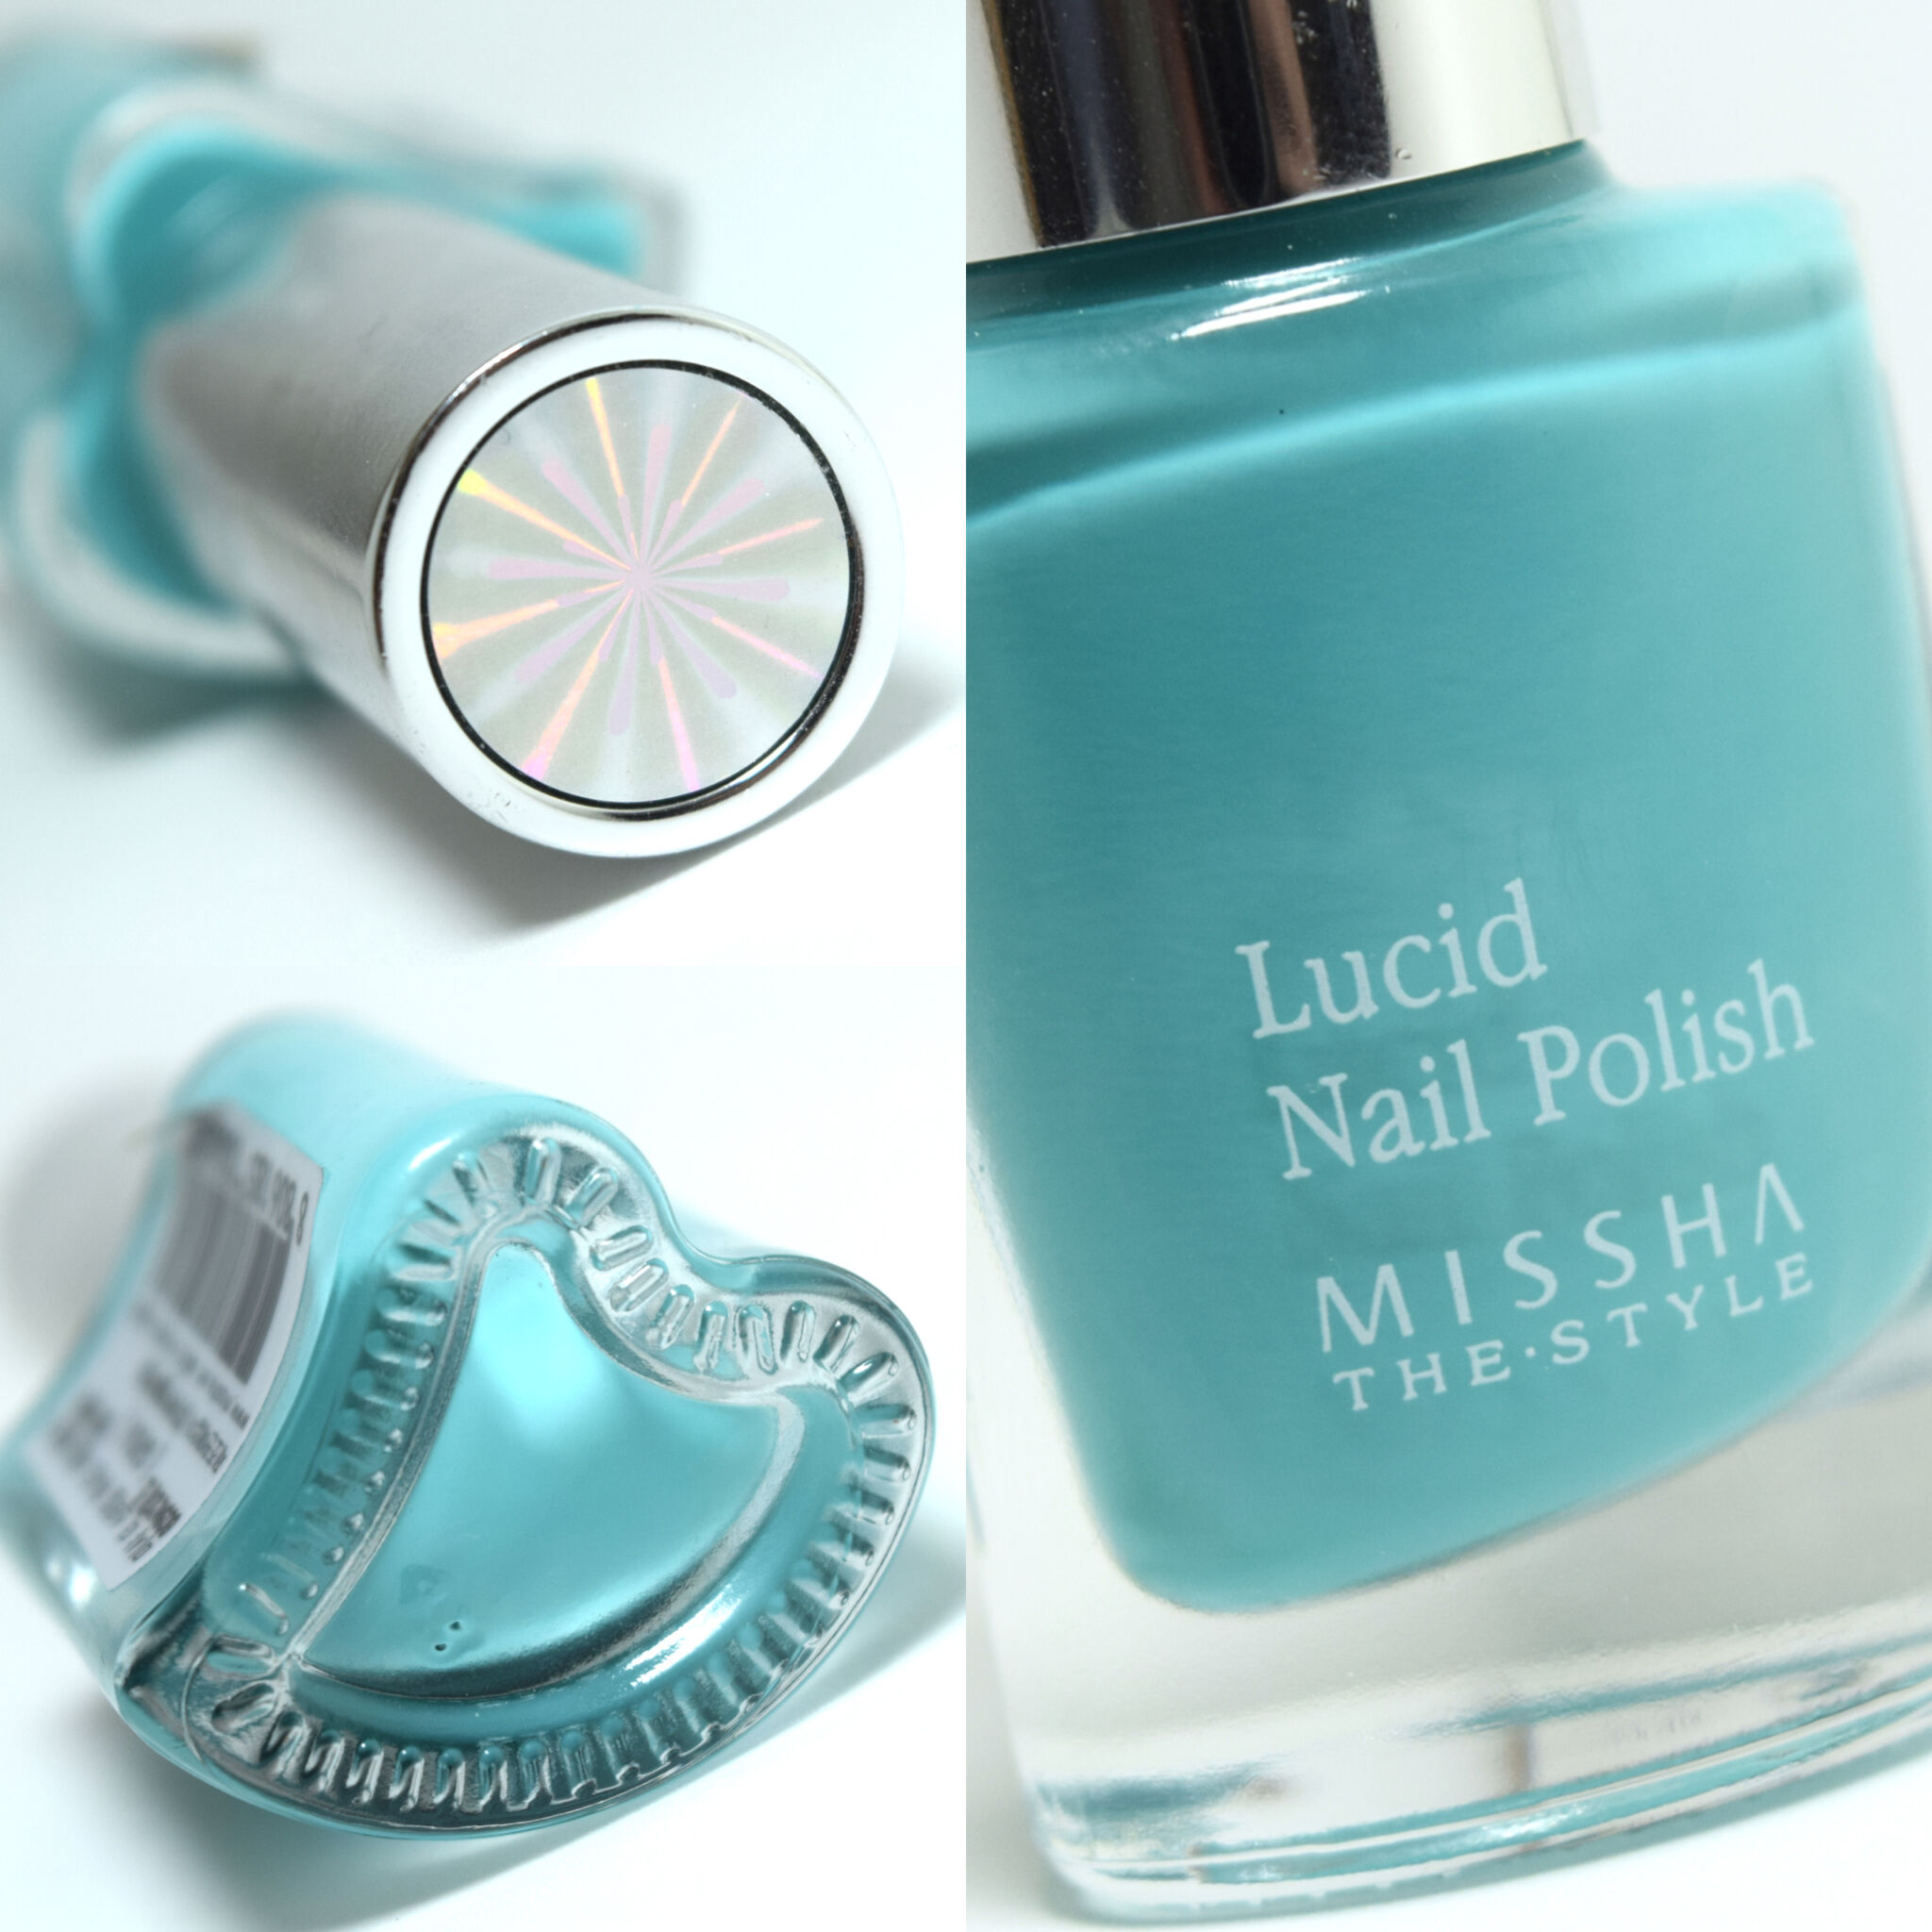 Missha - The Style - Lucid Nail Polish GR06 - K Beauty